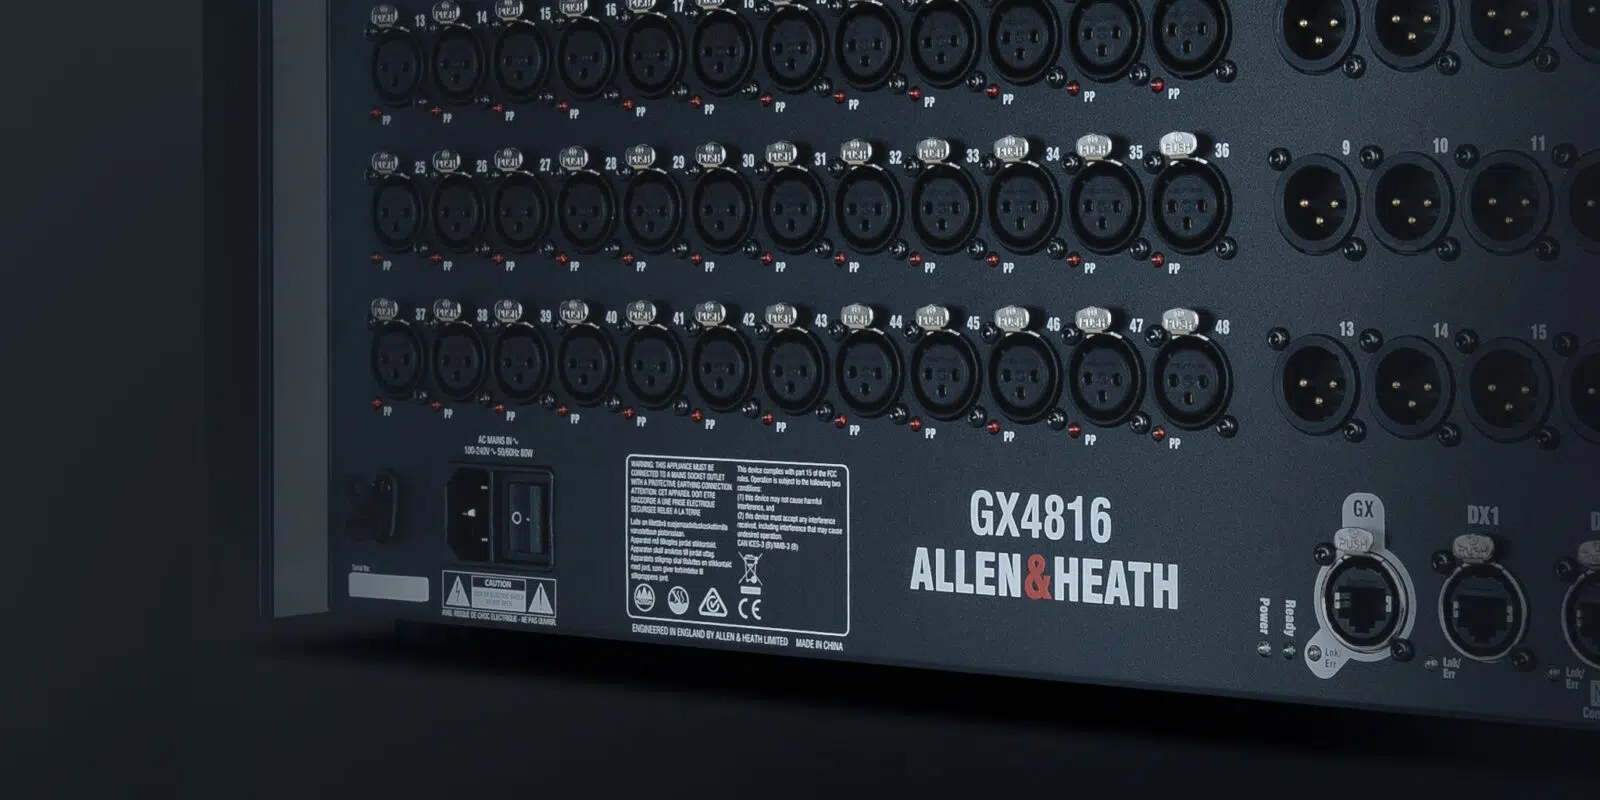 GX4816 - Allen & Heath